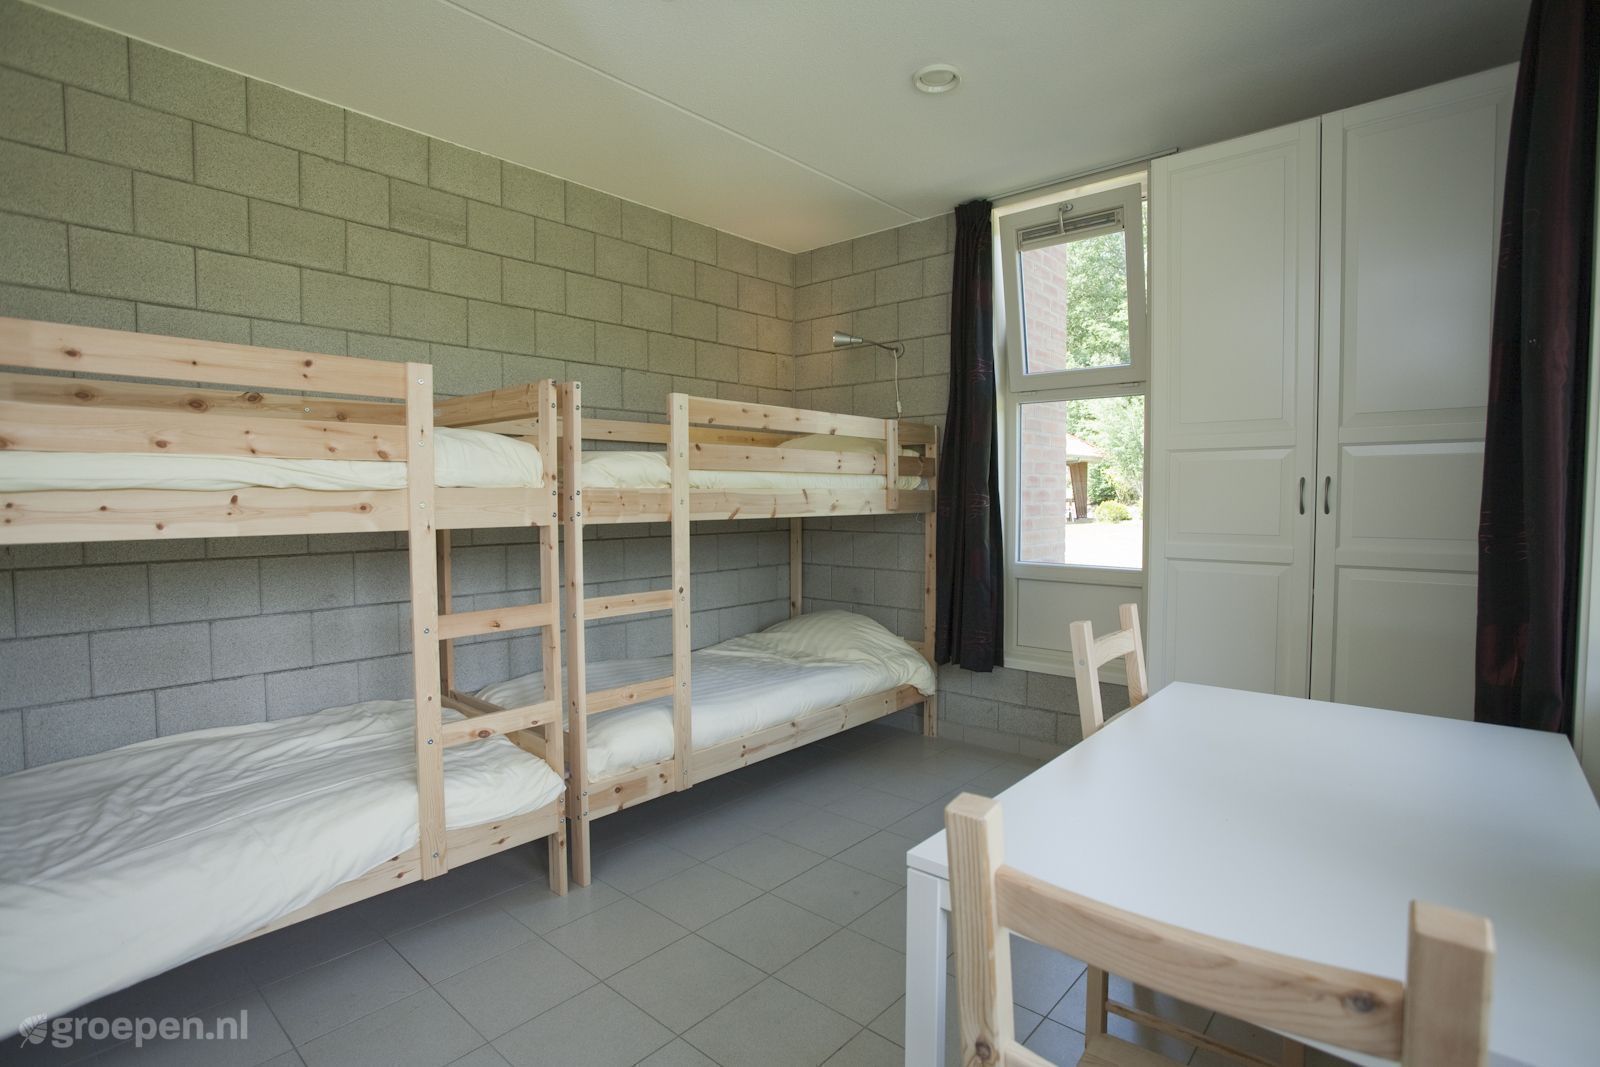 Group accommodation Heino